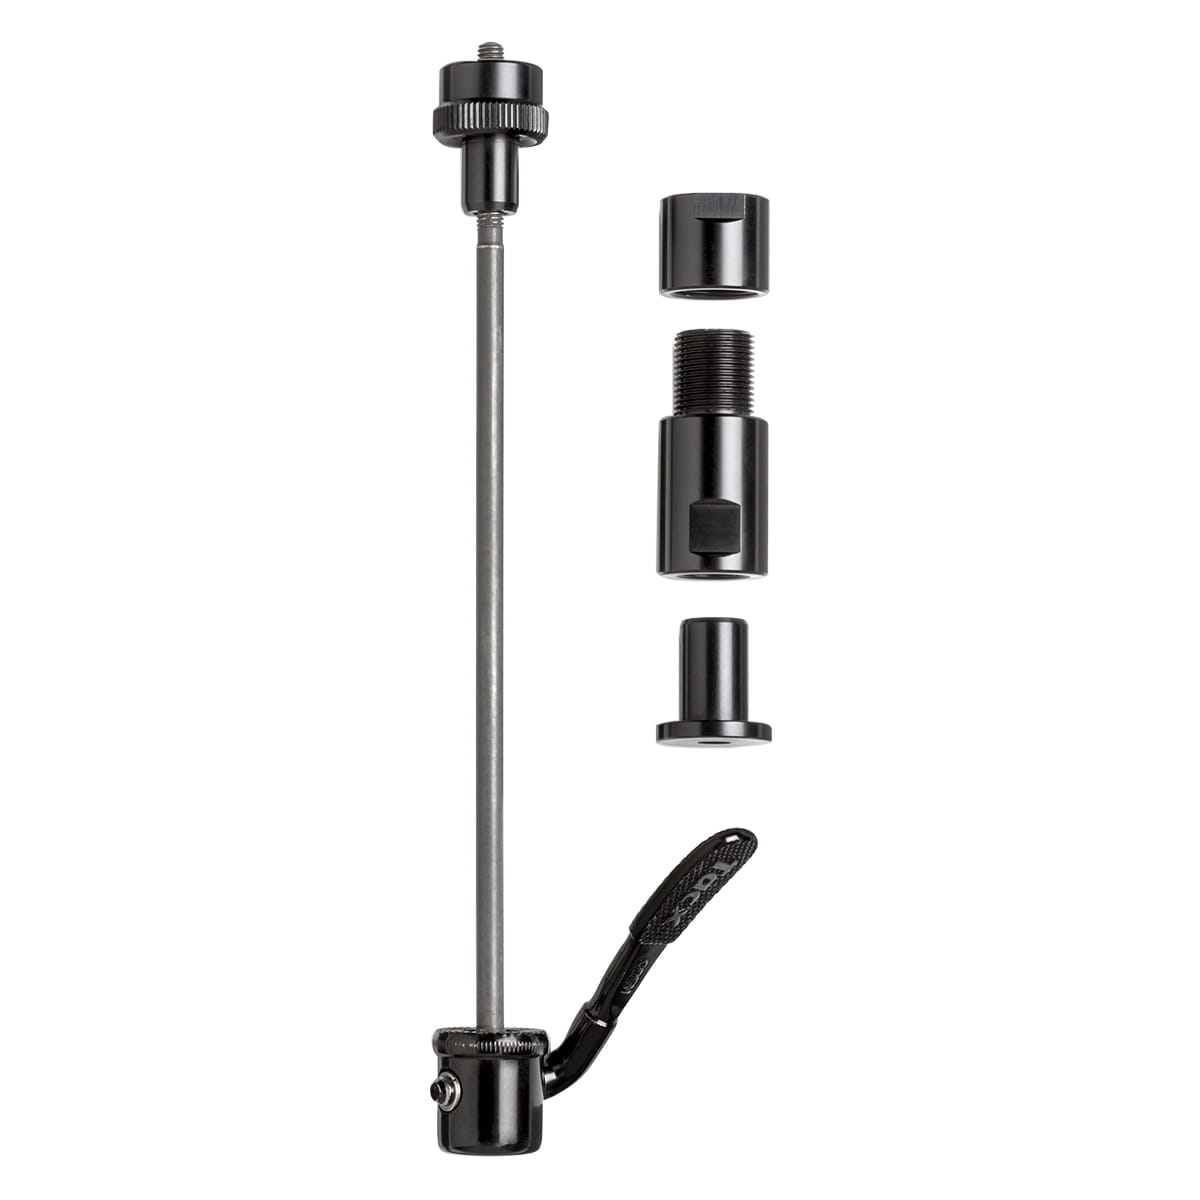 vers liefdadigheid negeren TACX Quick release adapter set 10x135 mm - Black | Home Trainer Accessories  | BMO Bike Mailorder